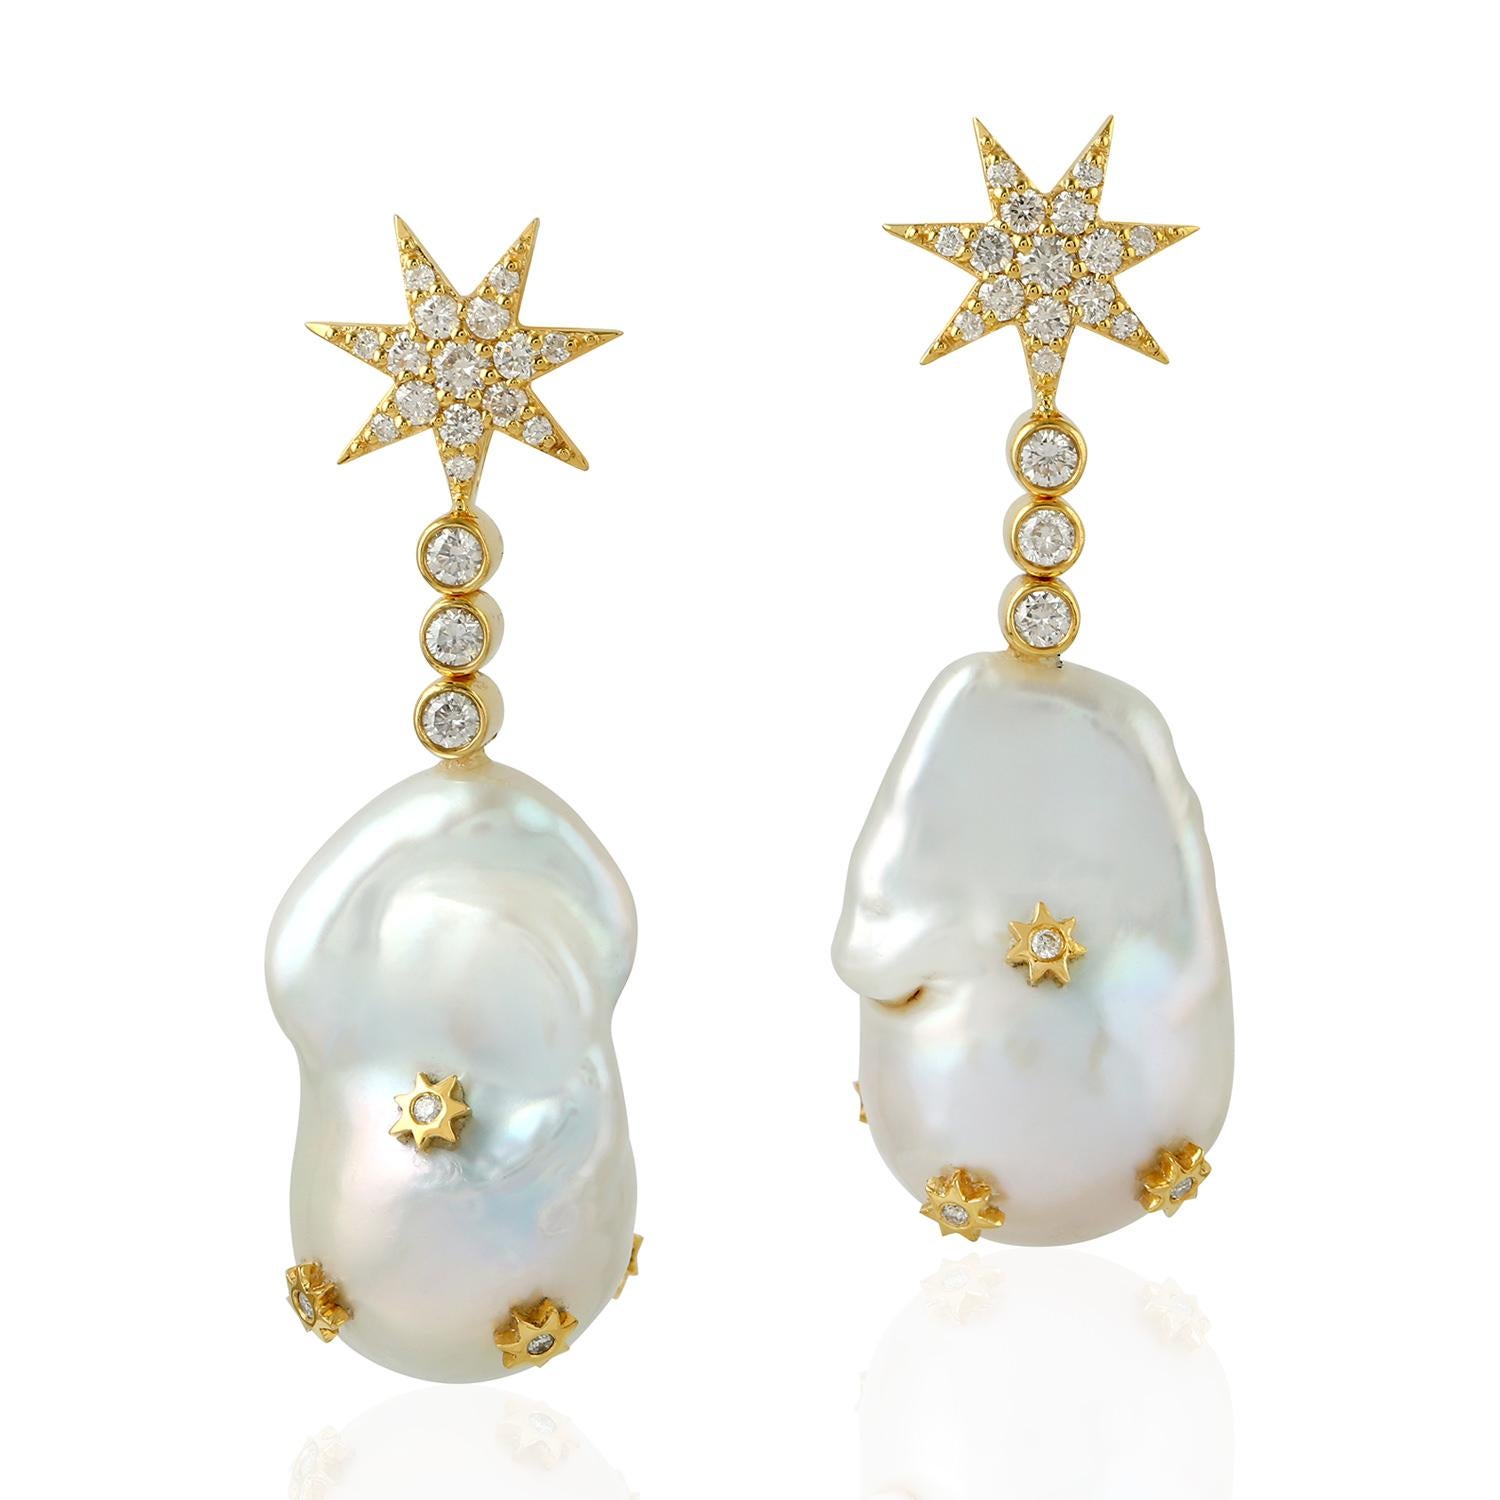 18k gold star earrings